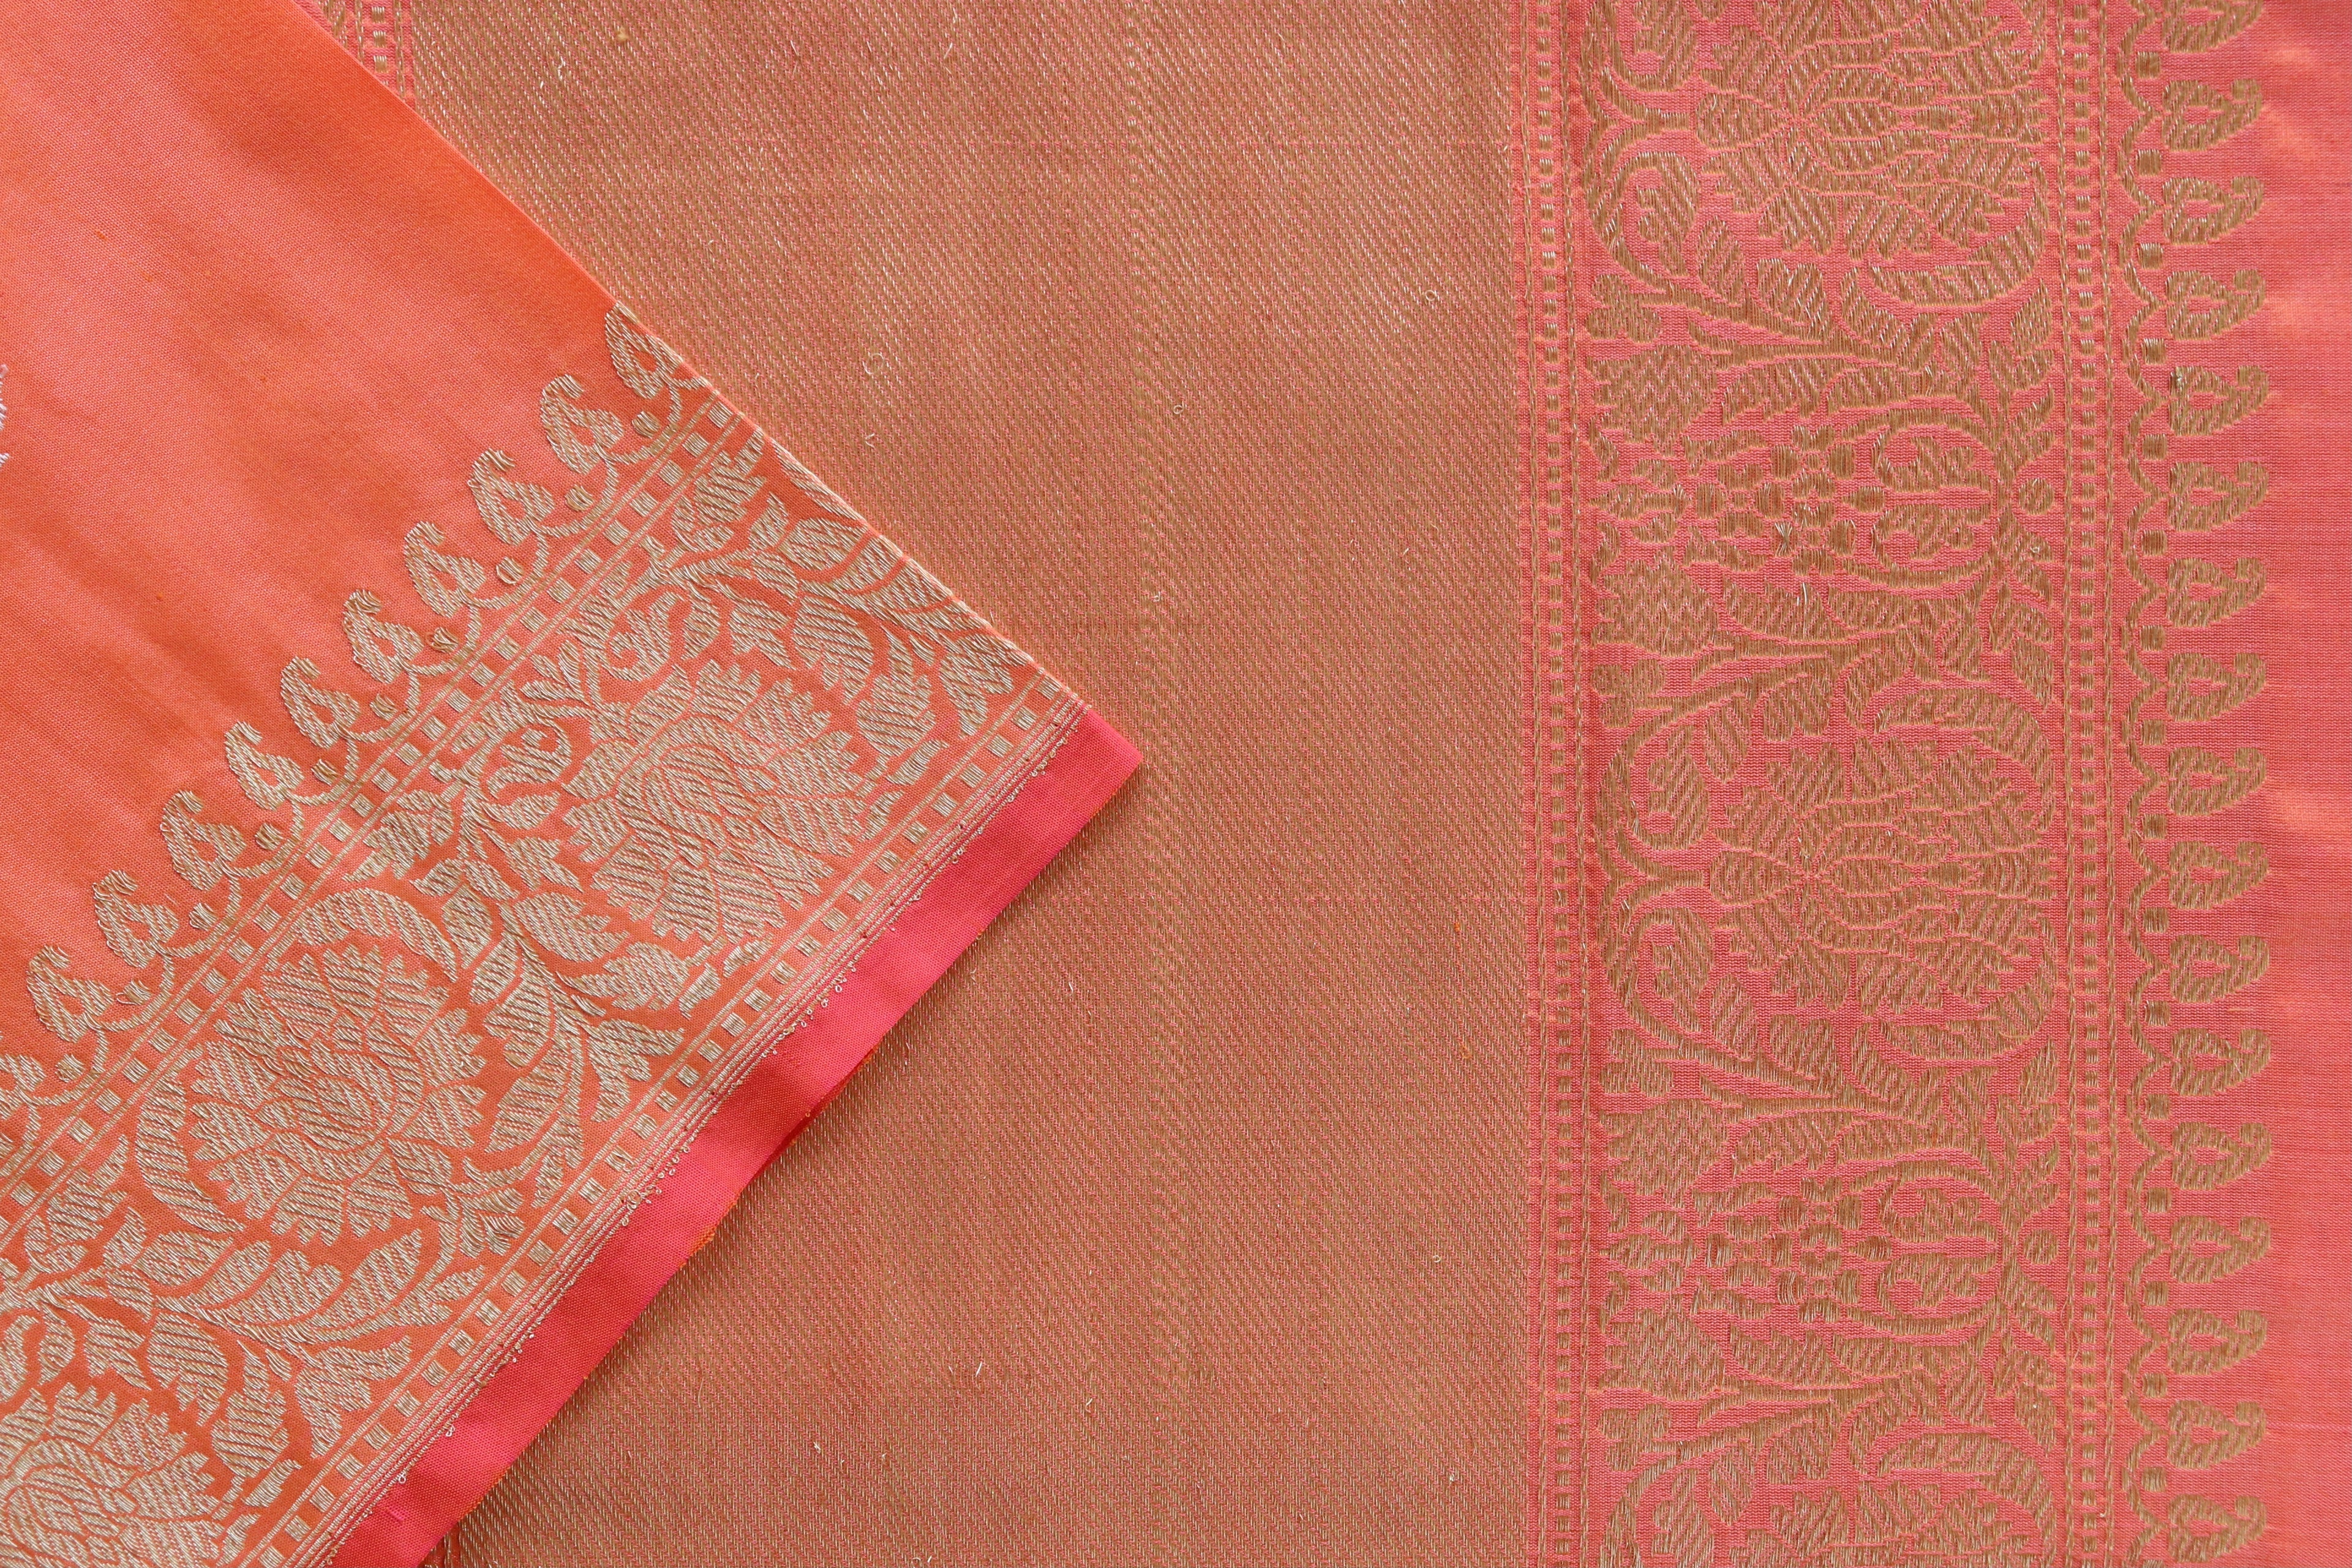 Tangerine Sona Rupa Pure Silk Handloom Banarasi Saree